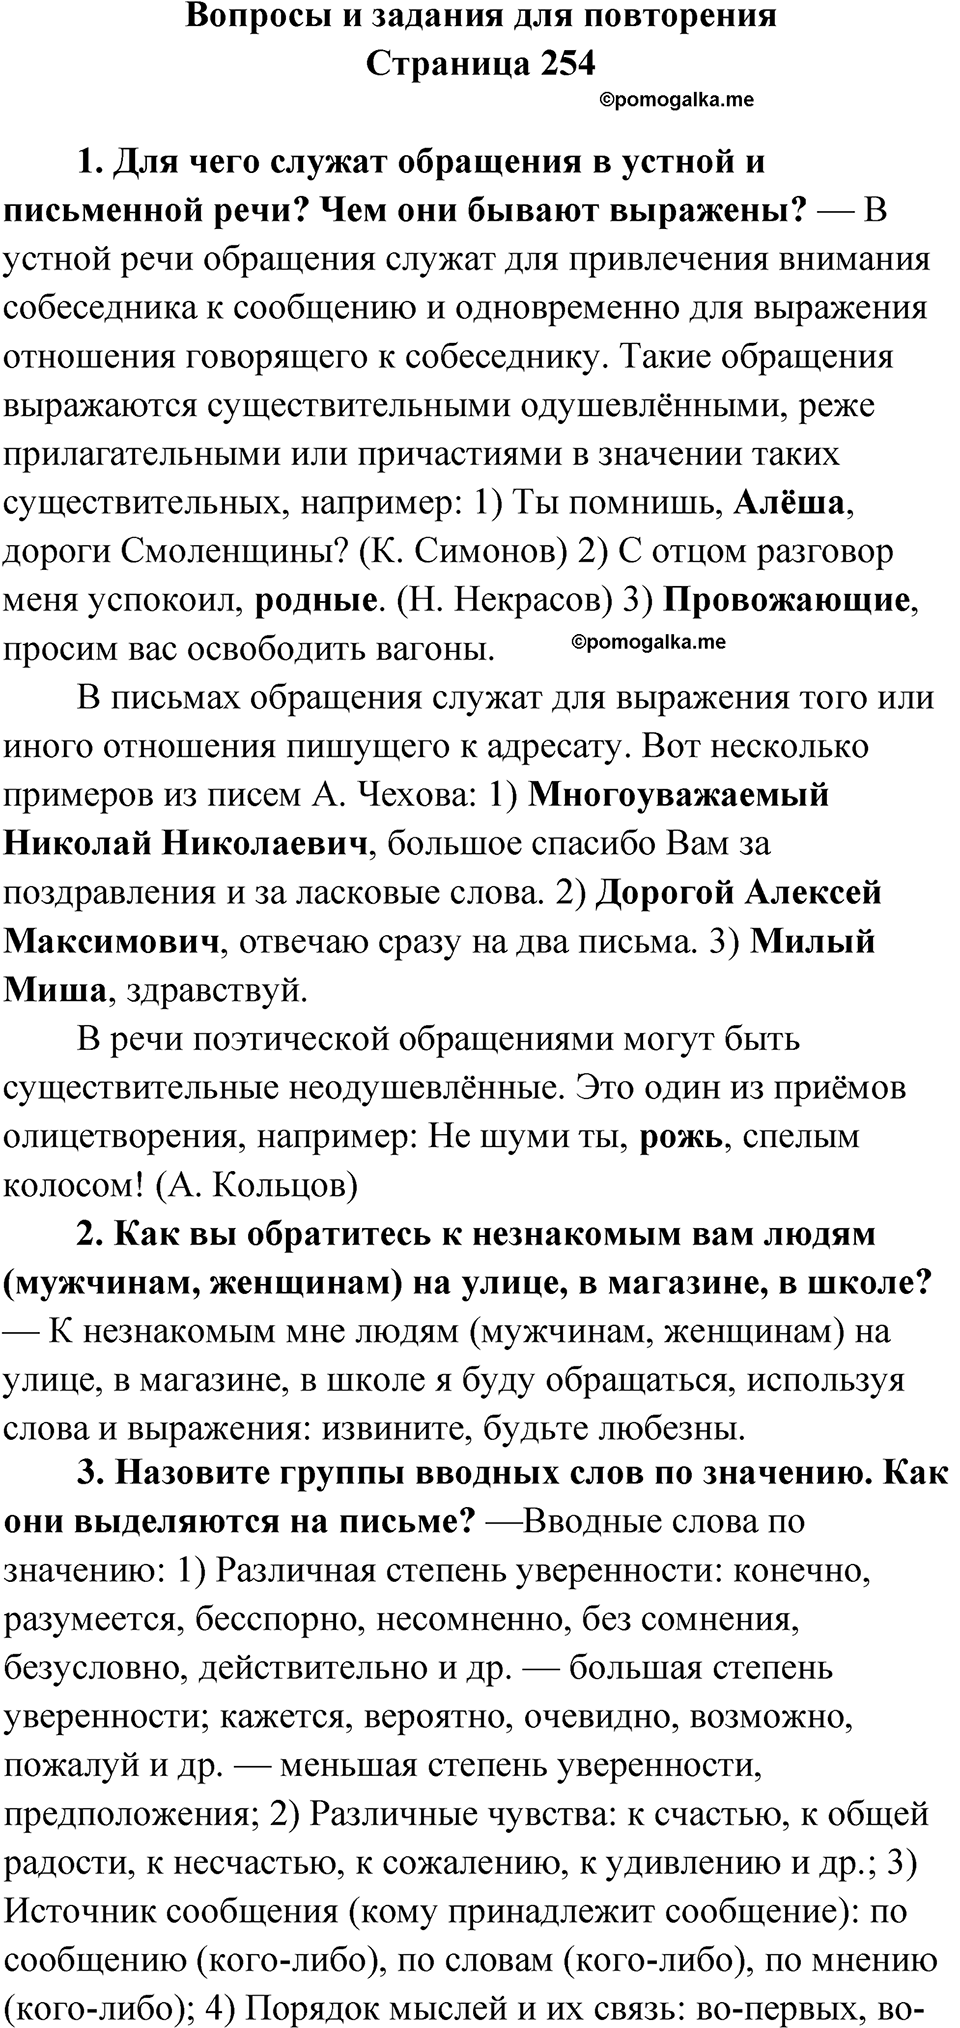 вопросы и задания для повторения, страница 254 русский язык 8 класс Бархударов 2023 год